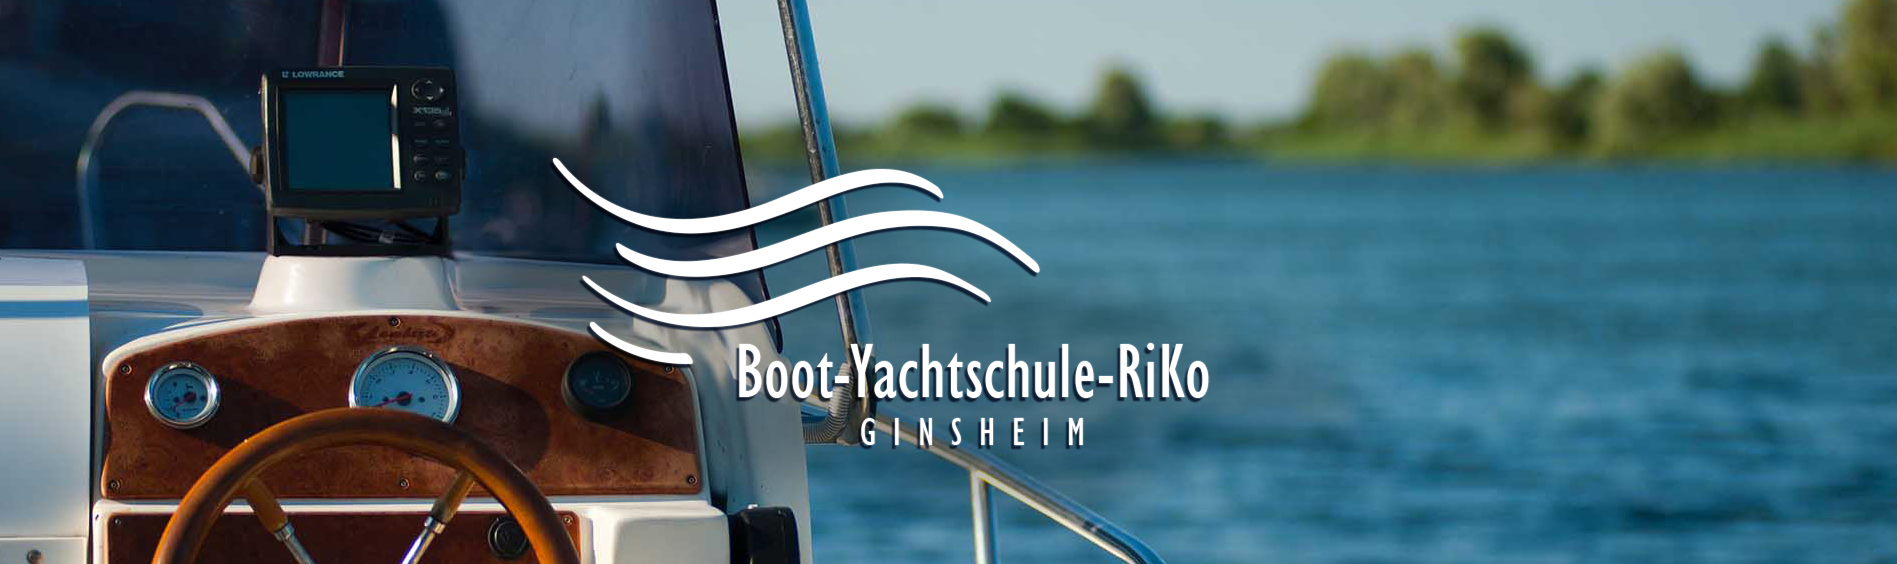 (c) Boot-yachtschule.de